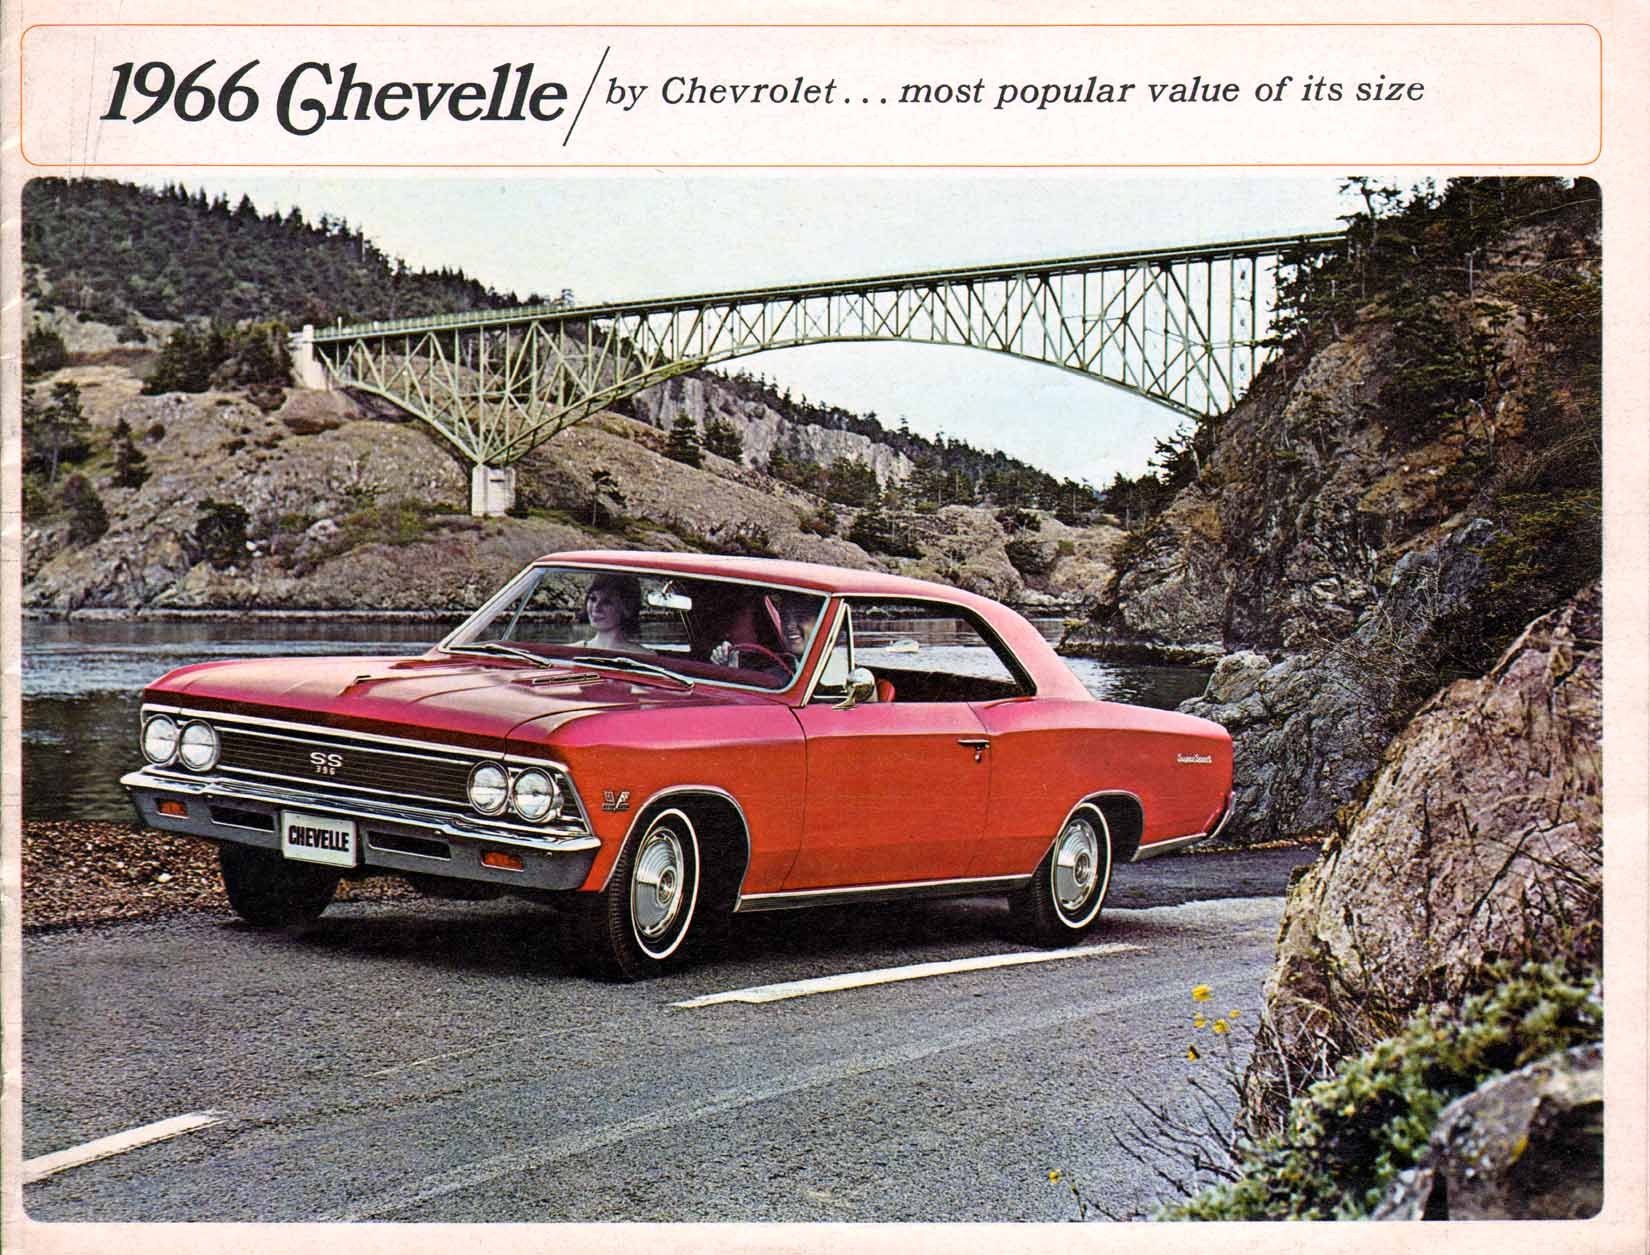 http://www.oldcarbrochures.com/static/NA/Chevrolet/1966_Chevrolet/1966_Chevrolet_Chevelle_Brochure/1966%20Chevrolet%20Chevelle-01.jpg